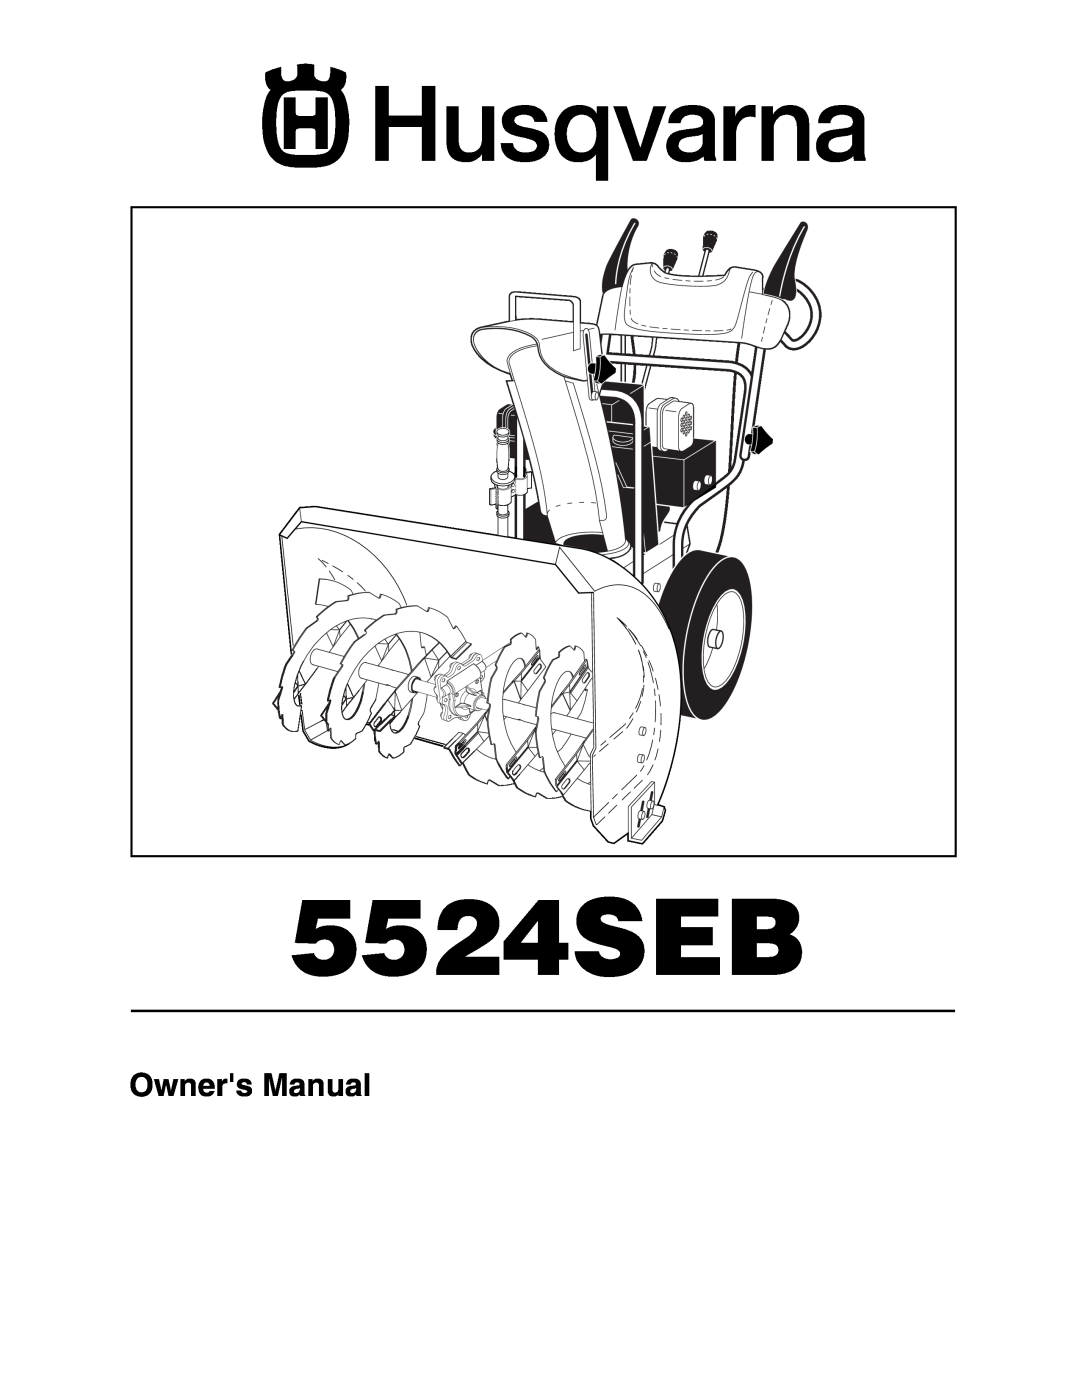 Husqvarna 5524SEB owner manual 